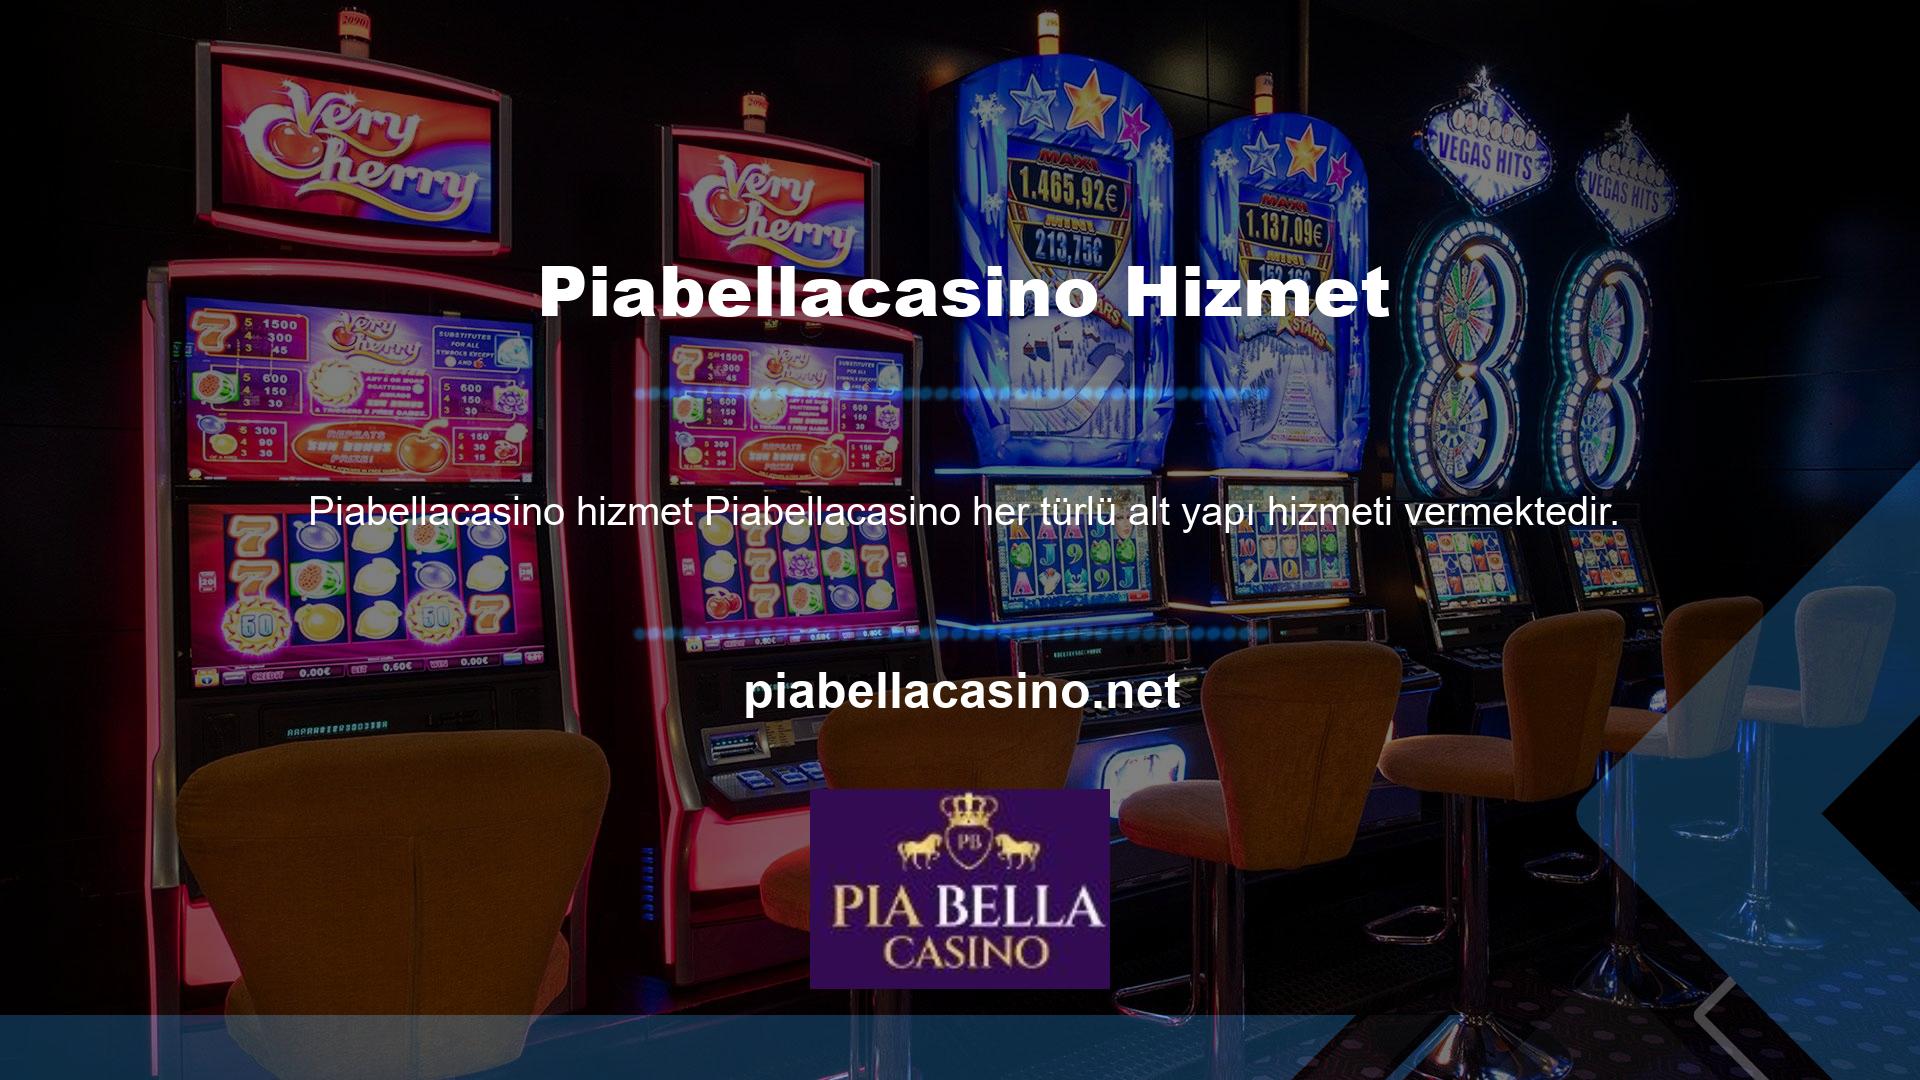 Piabellacasino Canlı Casino ve diğer casino oyunlarında herhangi bir gecikme veya takılma yaşamazsınız